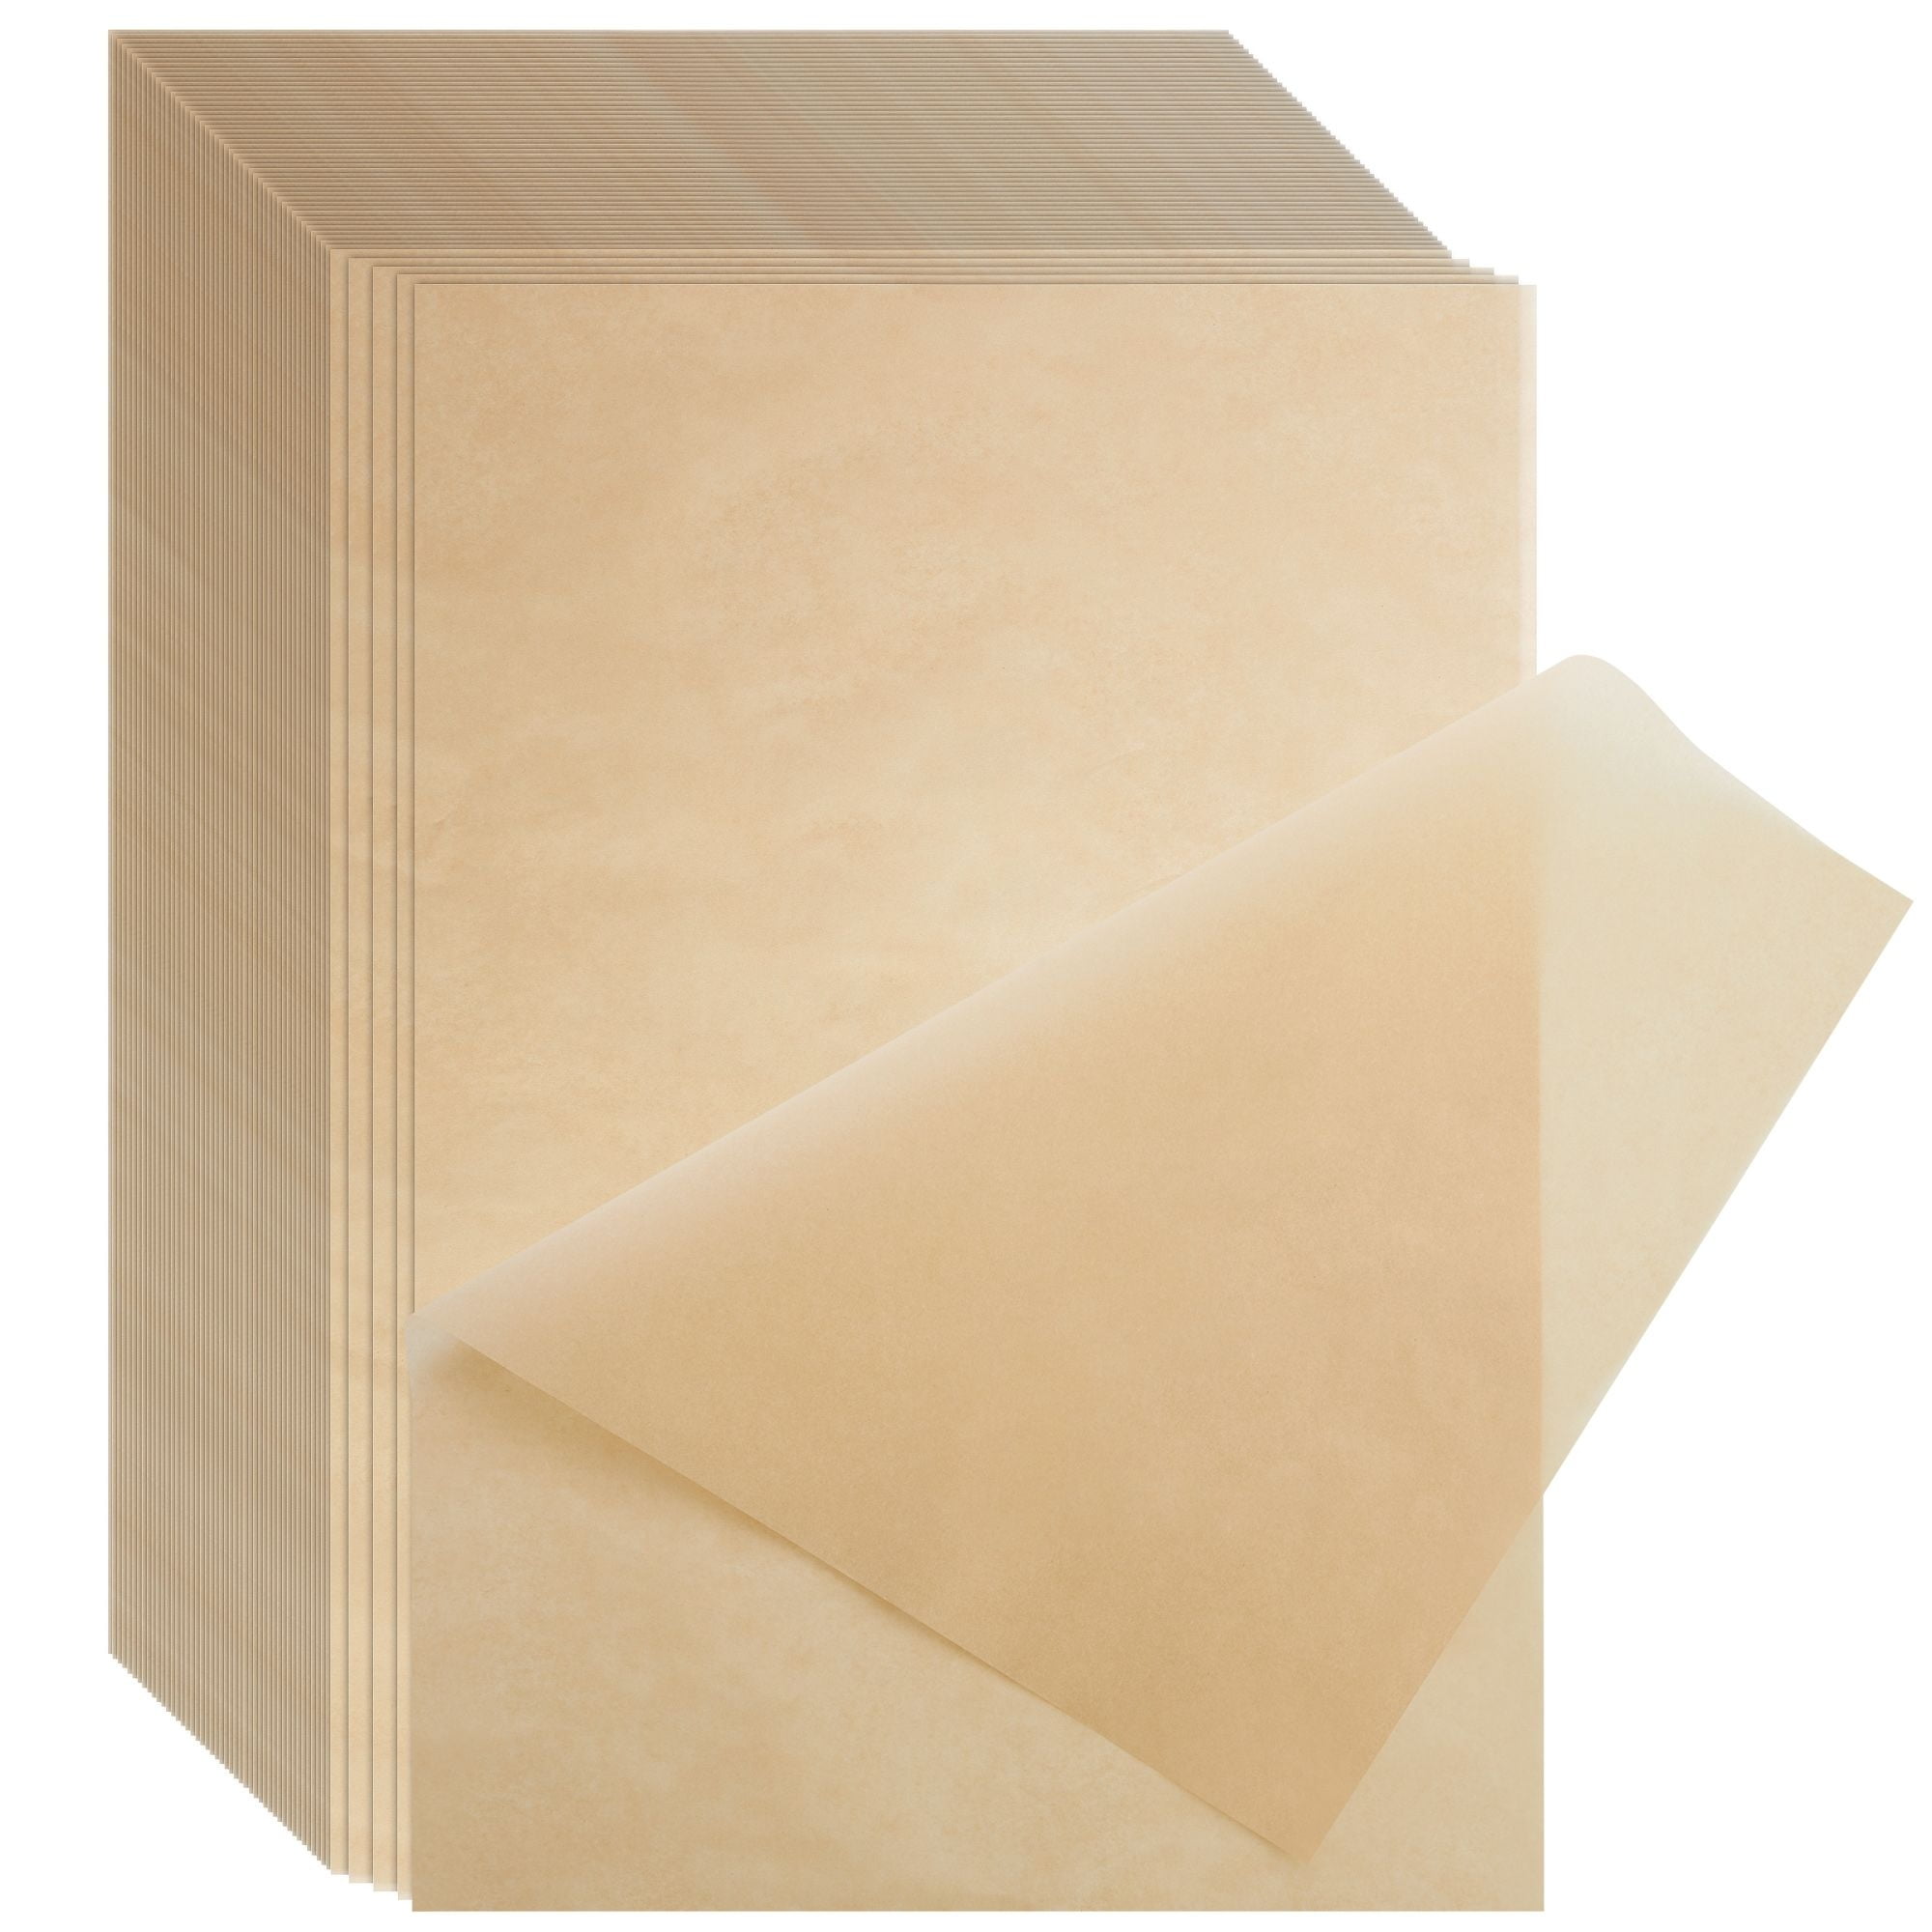 Beyond Gourmet Non-Stick Pre-Cut Parchment Paper Sheets, 12 x 16